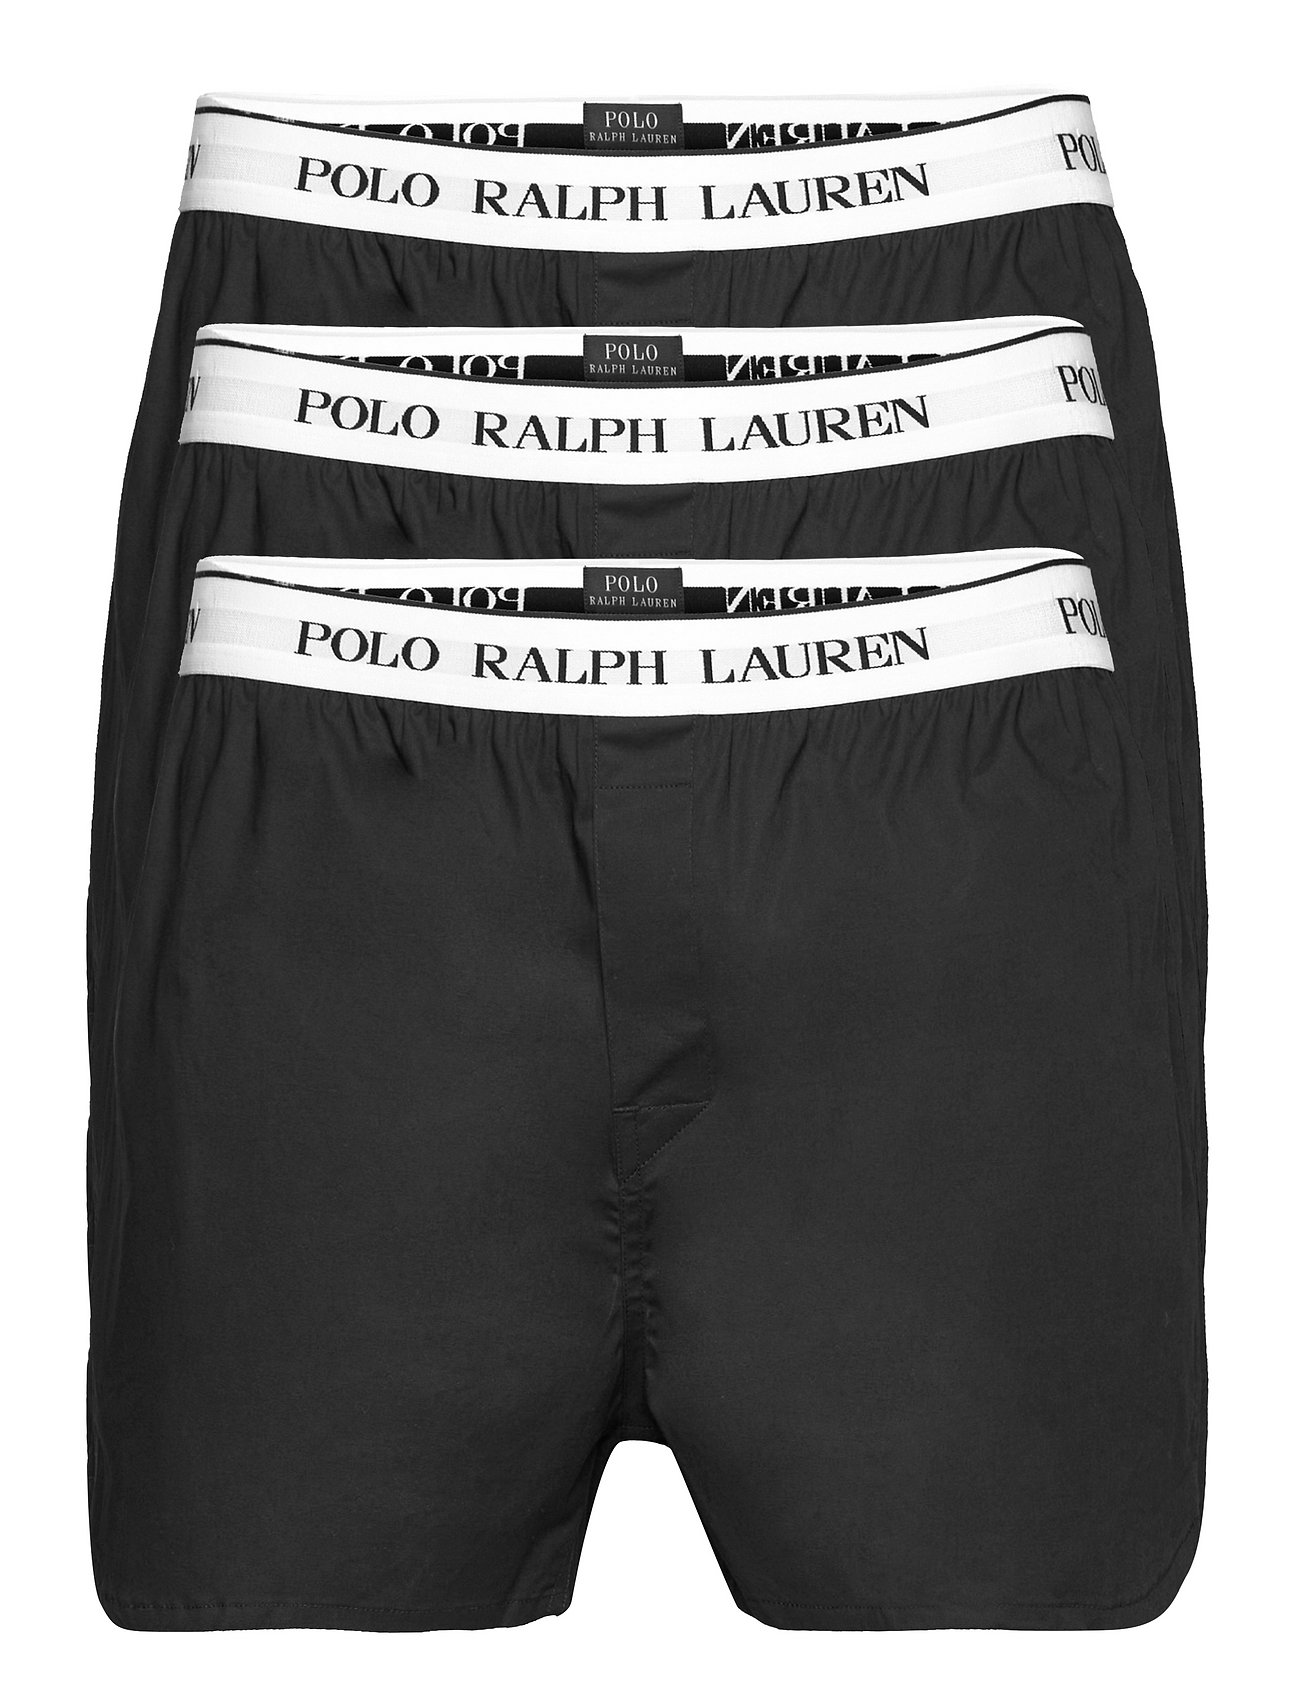 Polo Ralph Lauren Underwear Stretch Cotton 3-pack - Underbukser - Boozt.com